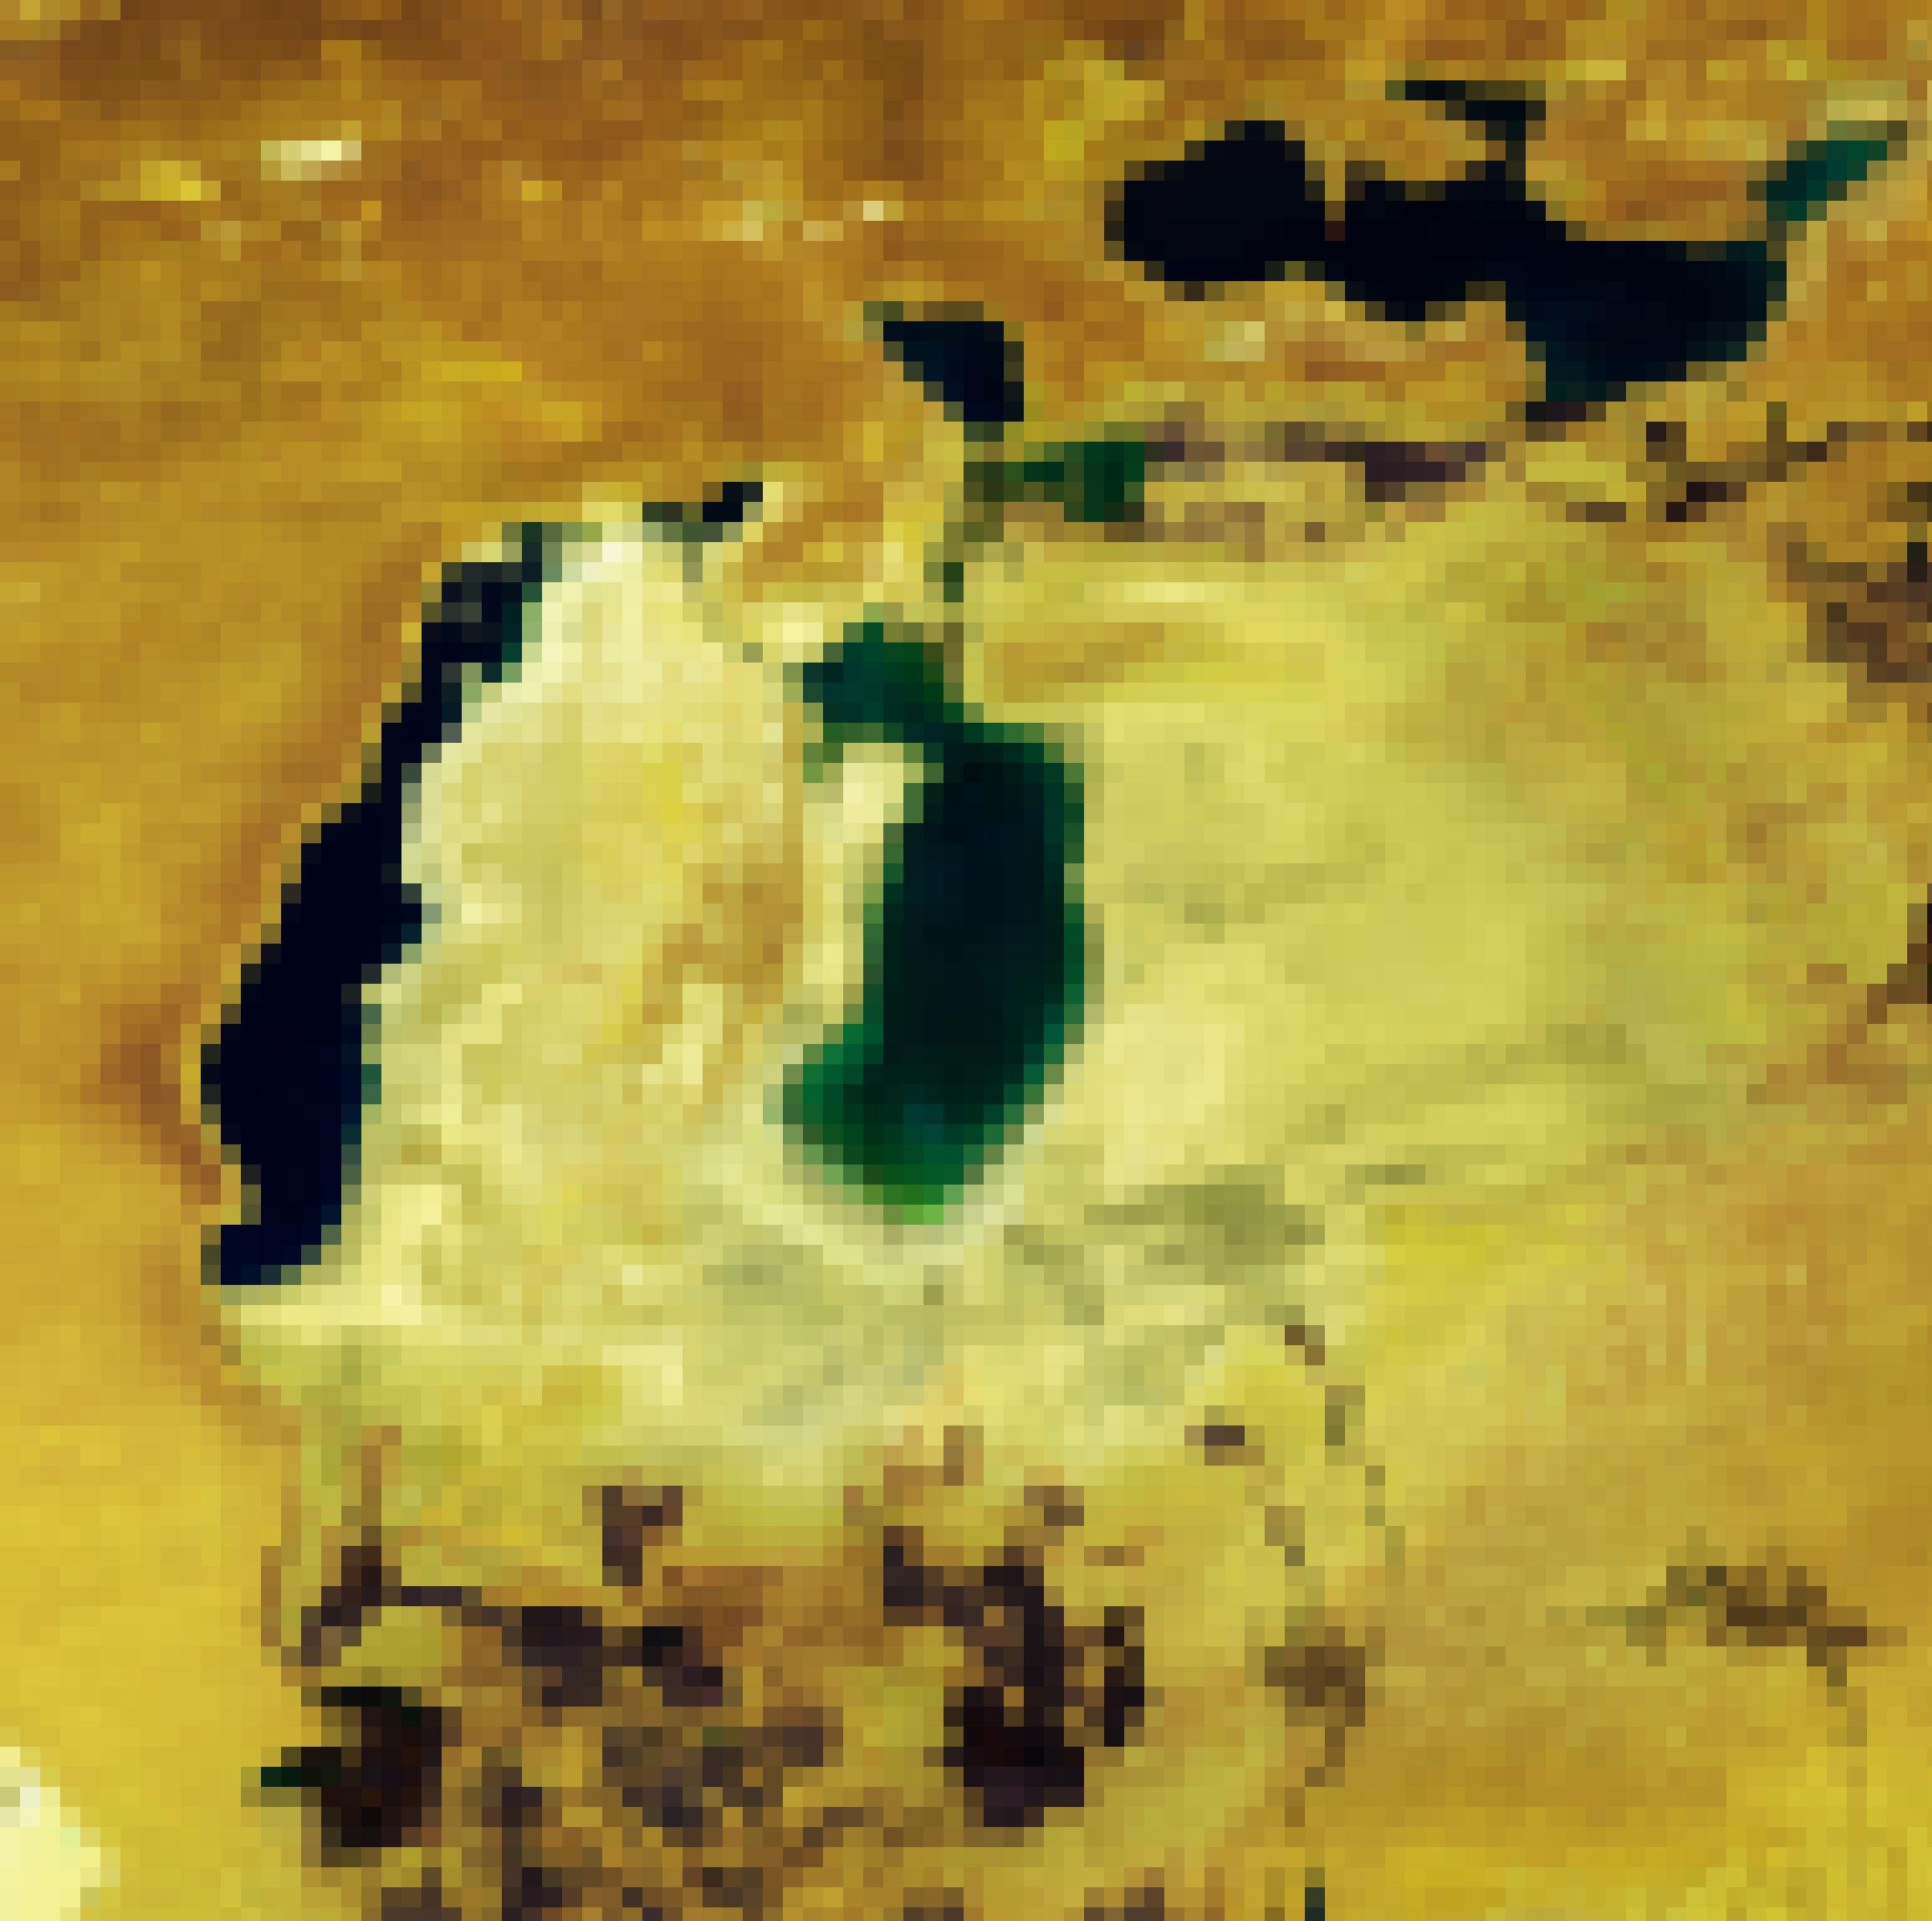 Satellitenbild einer gelben Wüste, der See ist nur noch im Norden an einer Küstenlinie mit Wasser erkennbar, der allergrößte Teil ist weißlich-gelb gefärbte Wüste.